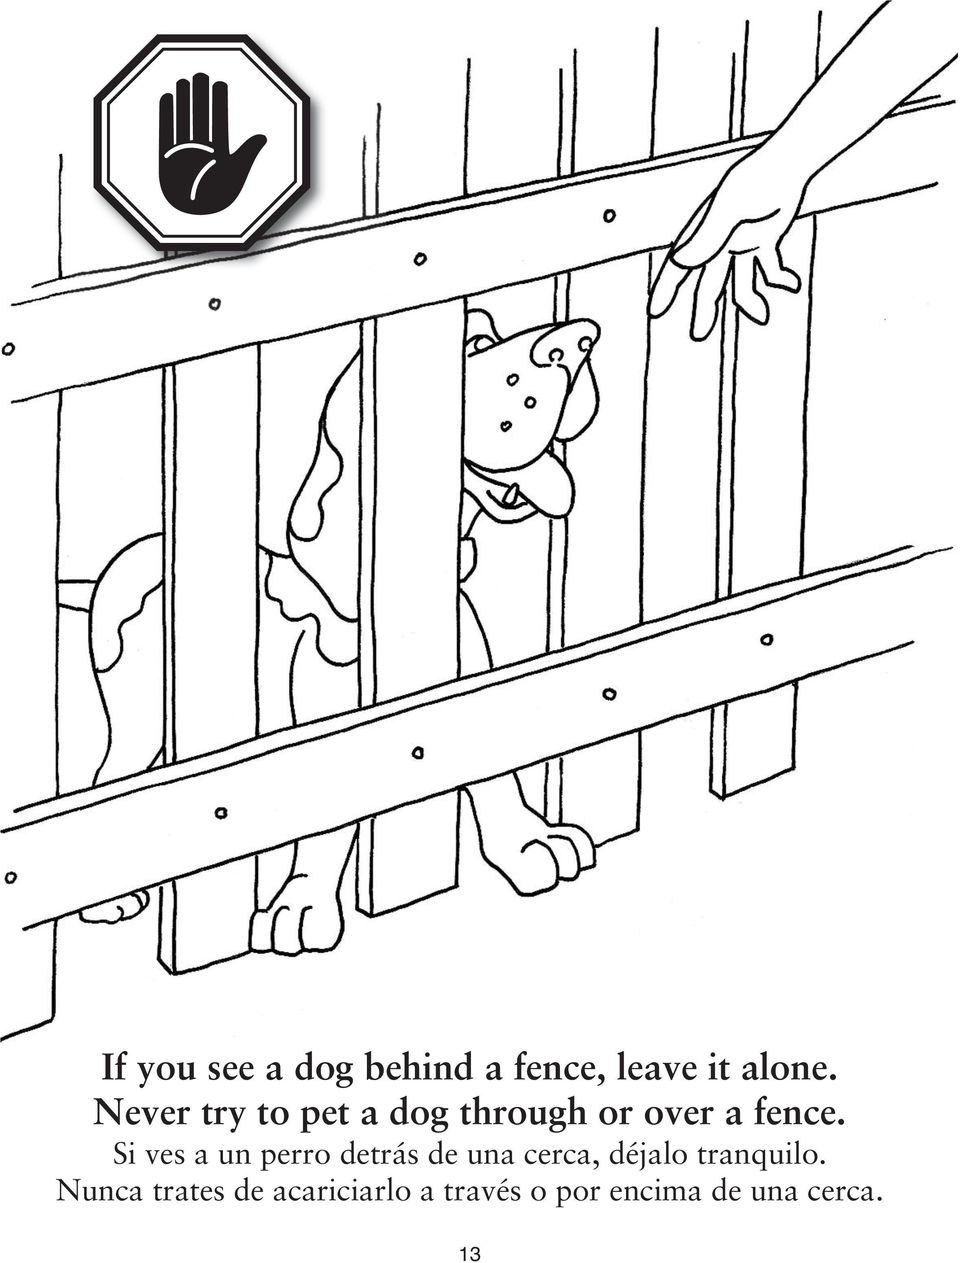 Si ves a un perro detrás de una cerca, déjalo